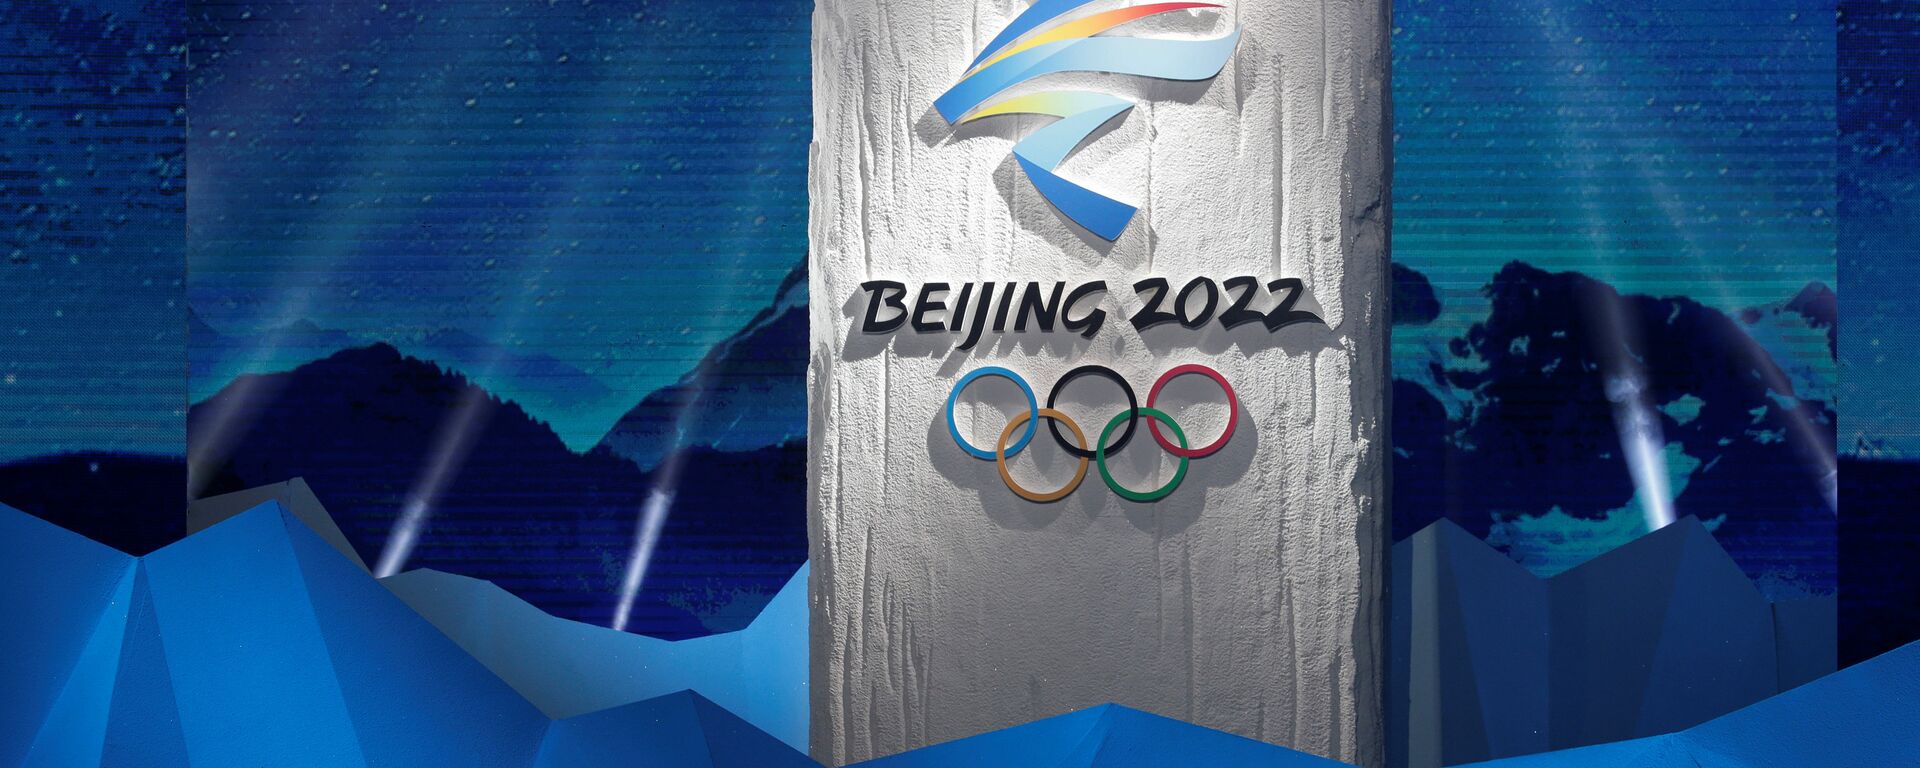 Эмблема Олимпийских зимних игр в Пекине 2022 года - Sputnik Латвия, 1920, 24.09.2021